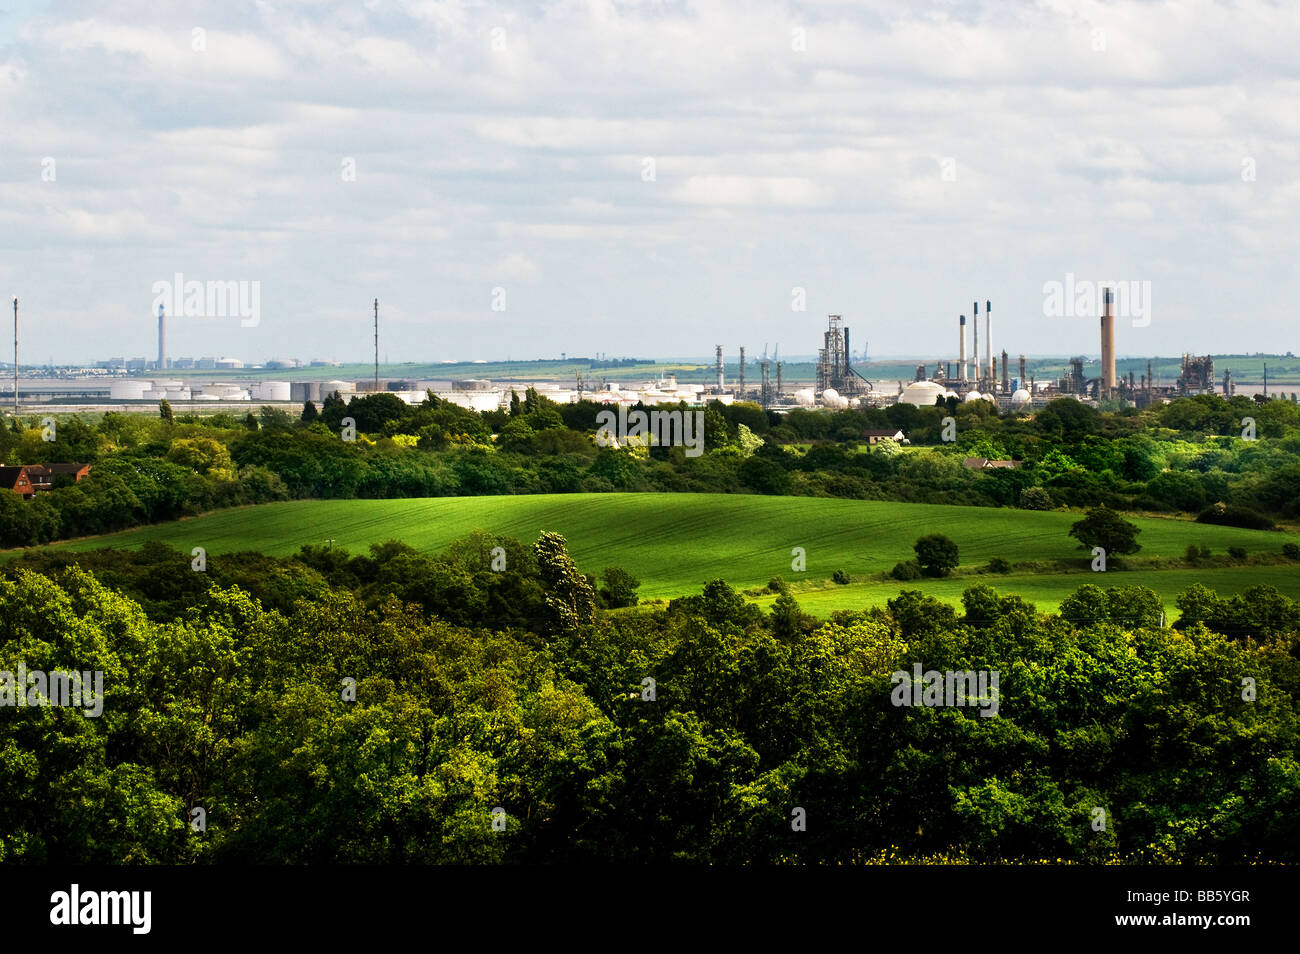 Raffinerie Coryton vu de Langdon Hills Country Park dans l'Essex. Banque D'Images